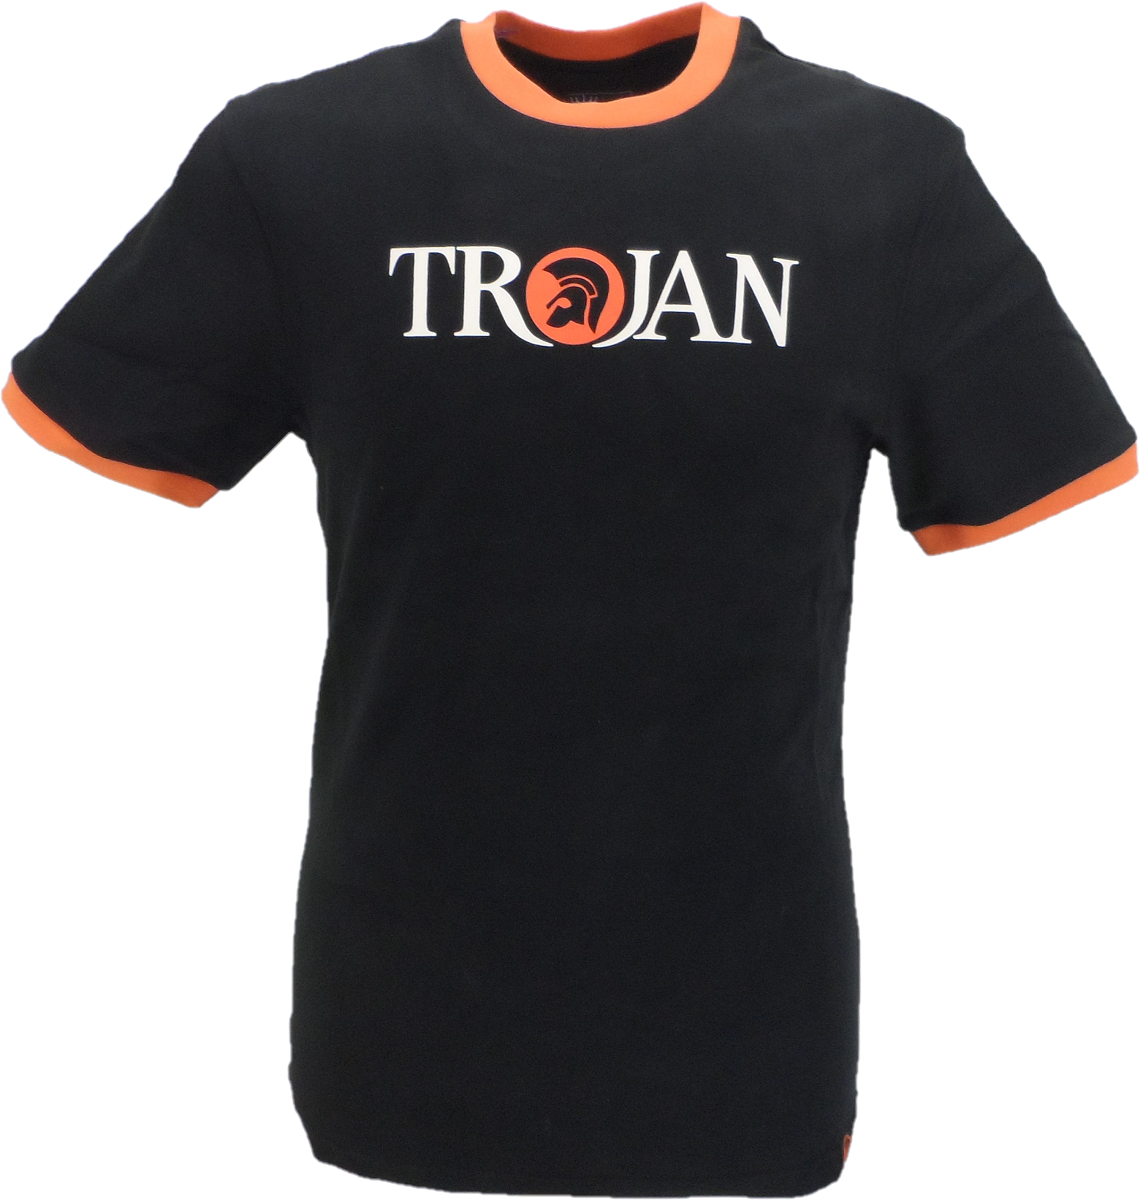 Trojan Records ブラック クラシック ヘルメット ロゴ コットン 100% T シャツ